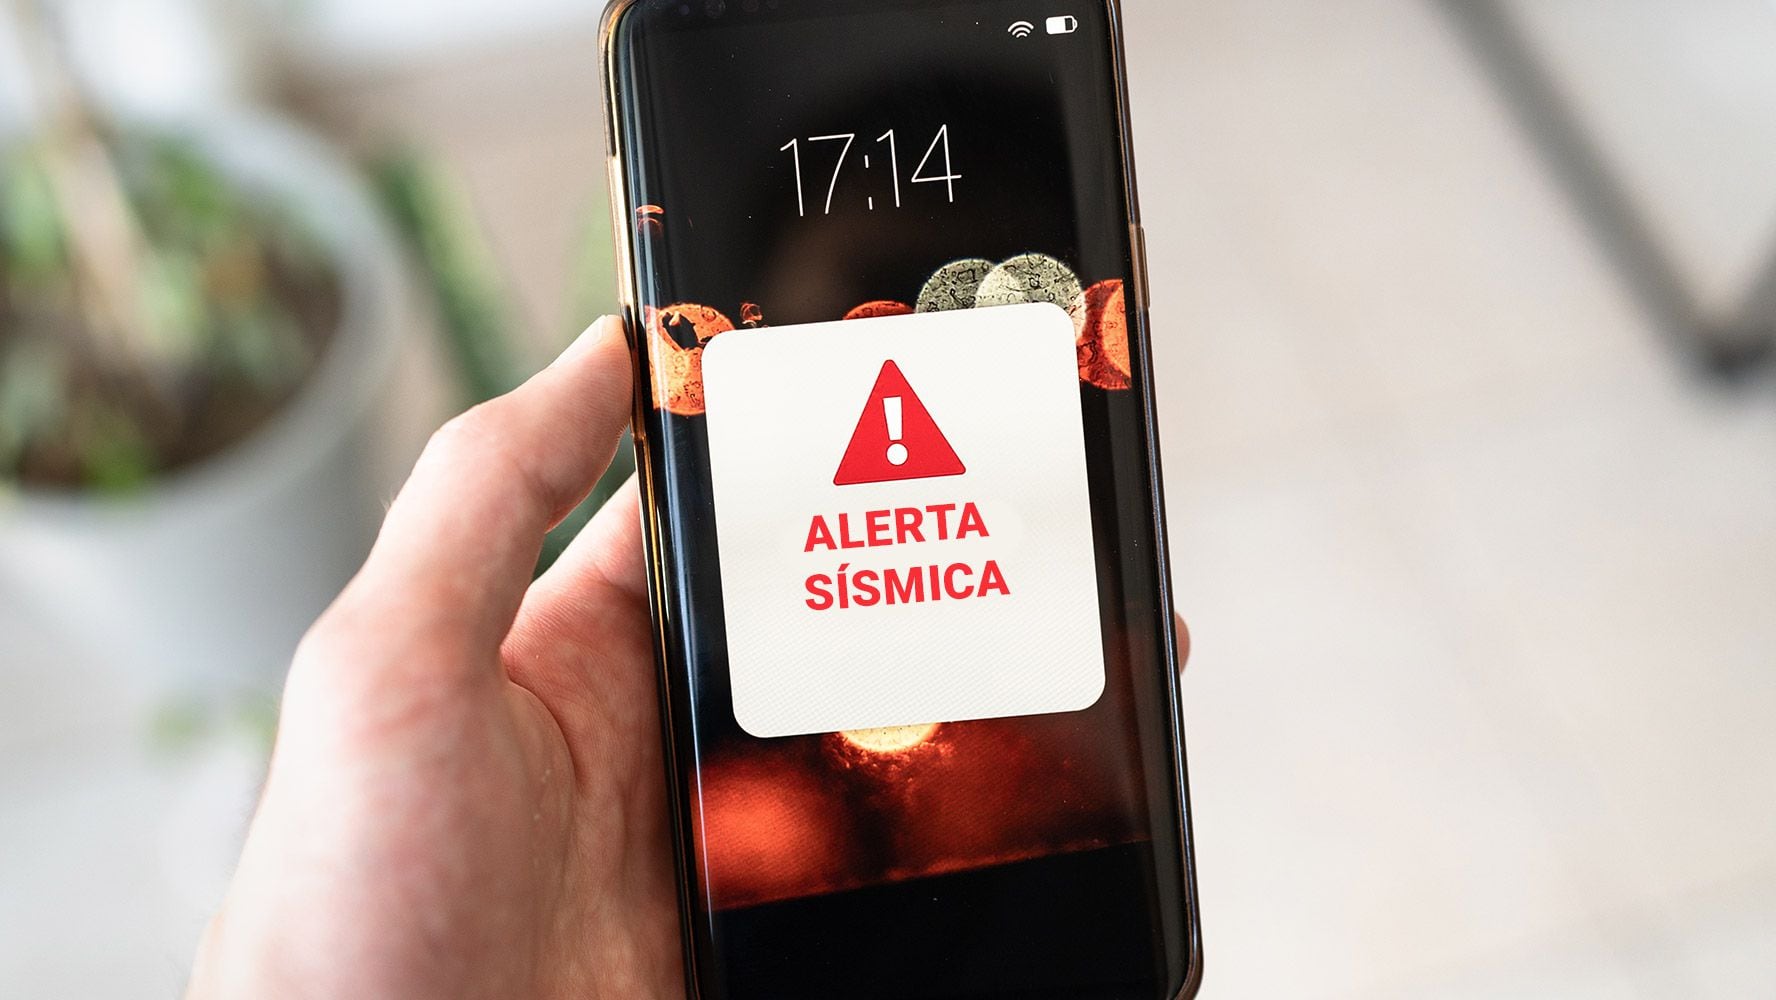 ¿Por fin llegará la alerta sísmica a los celulares? PC anuncia fecha de pruebas